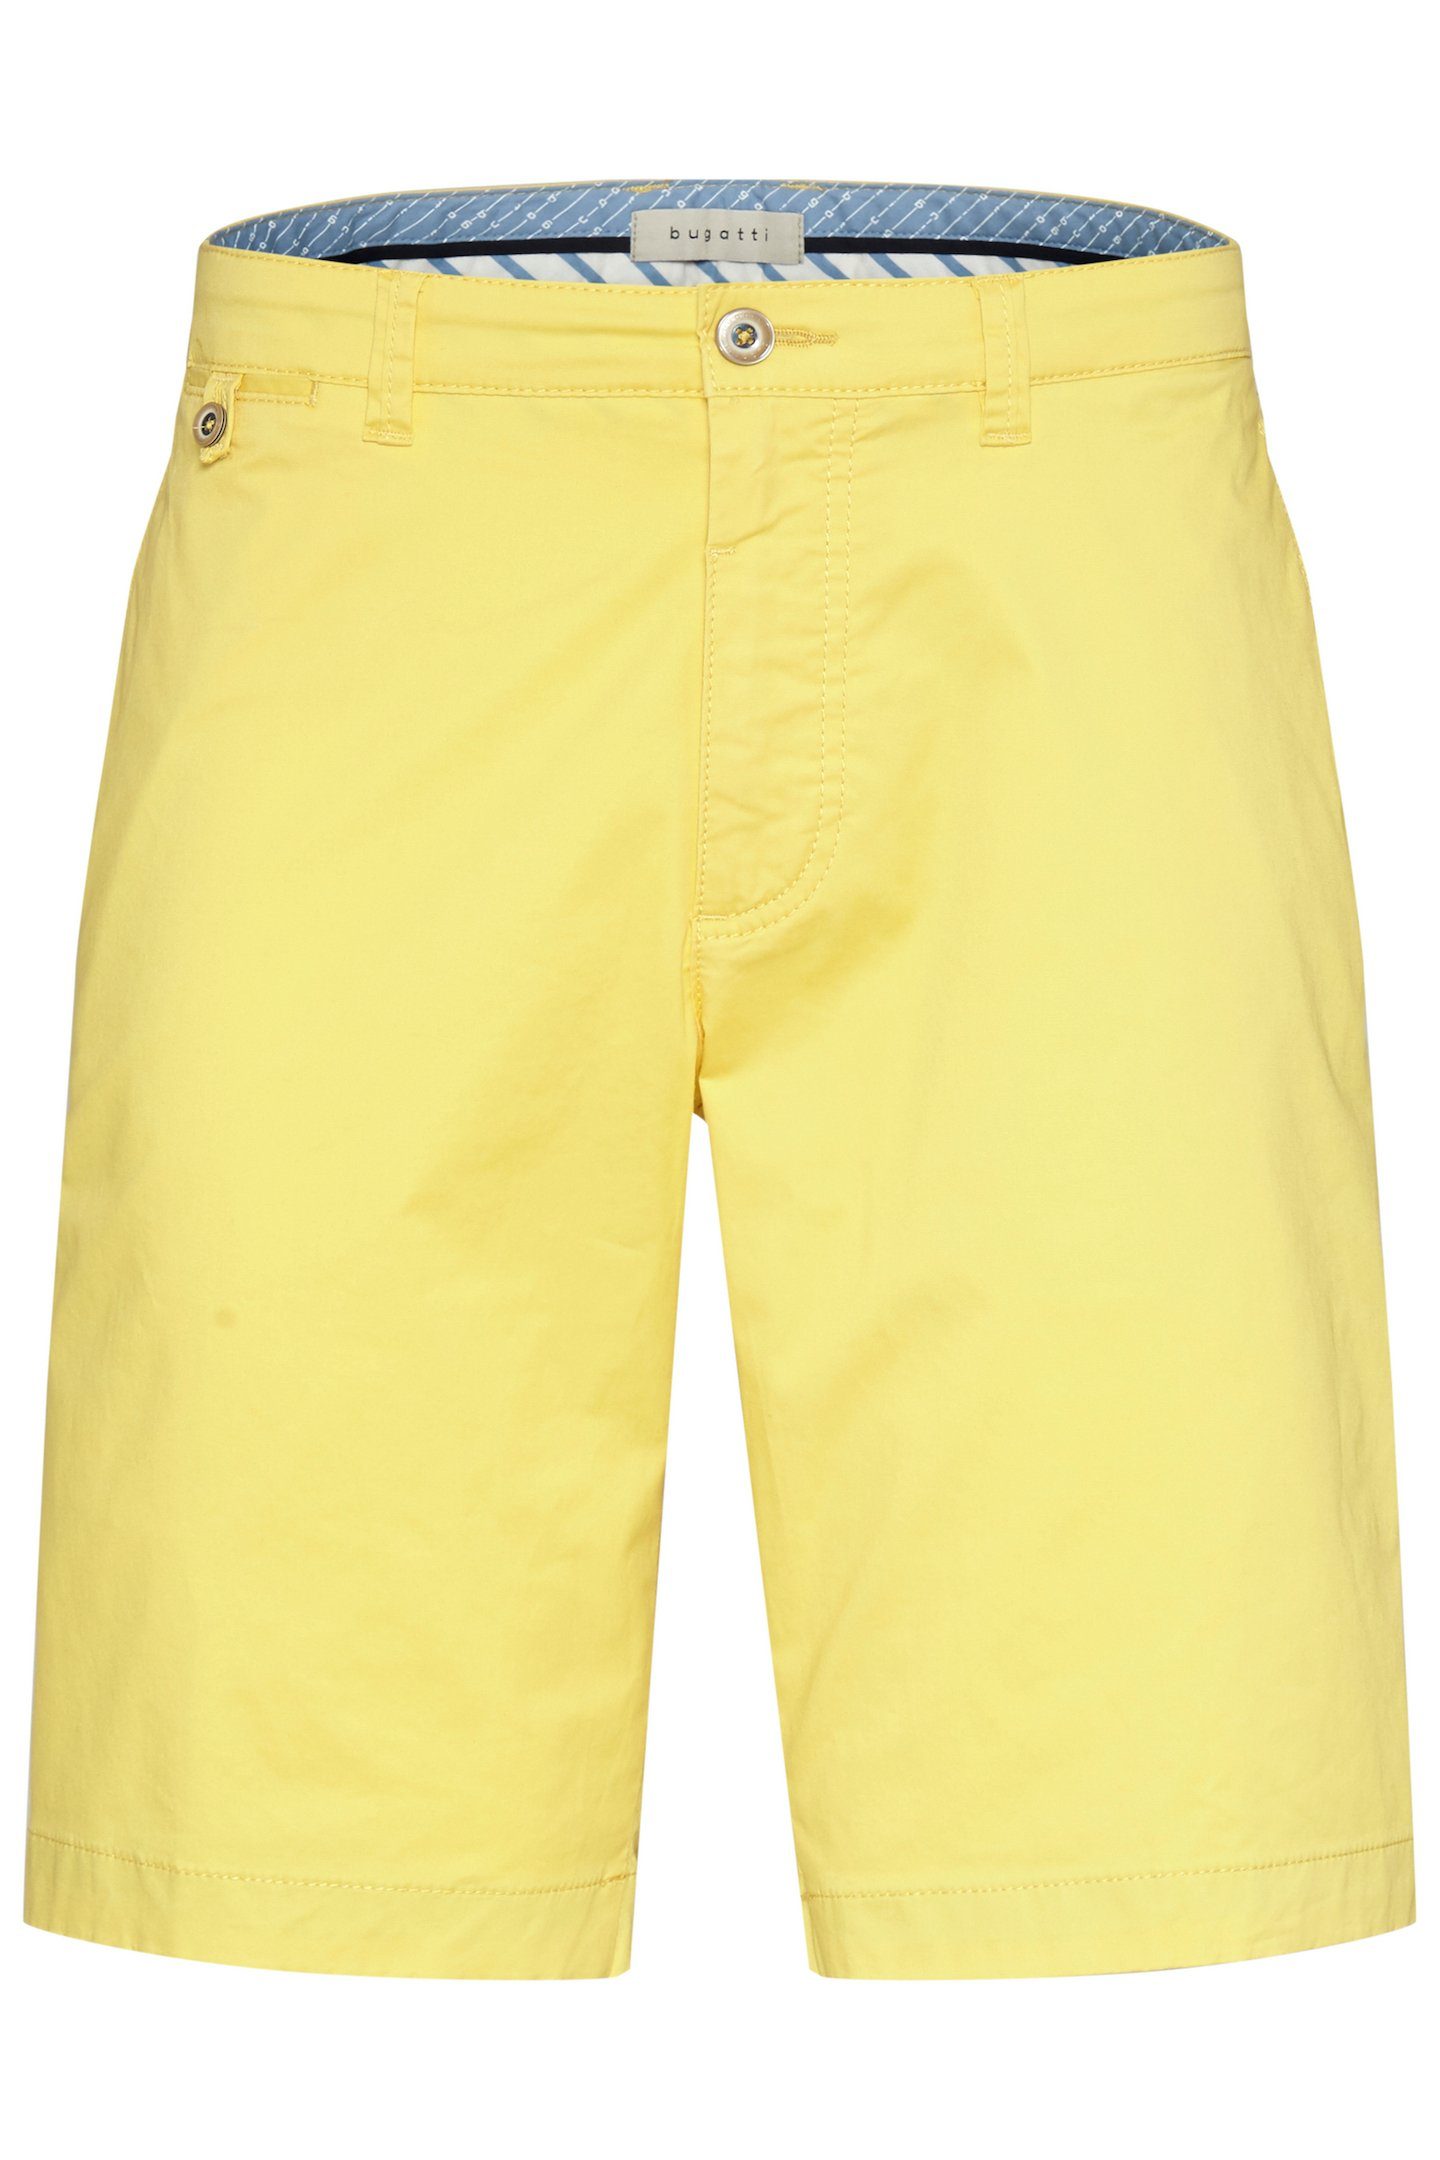 bugatti Shorts in cleanen einem gelb Look